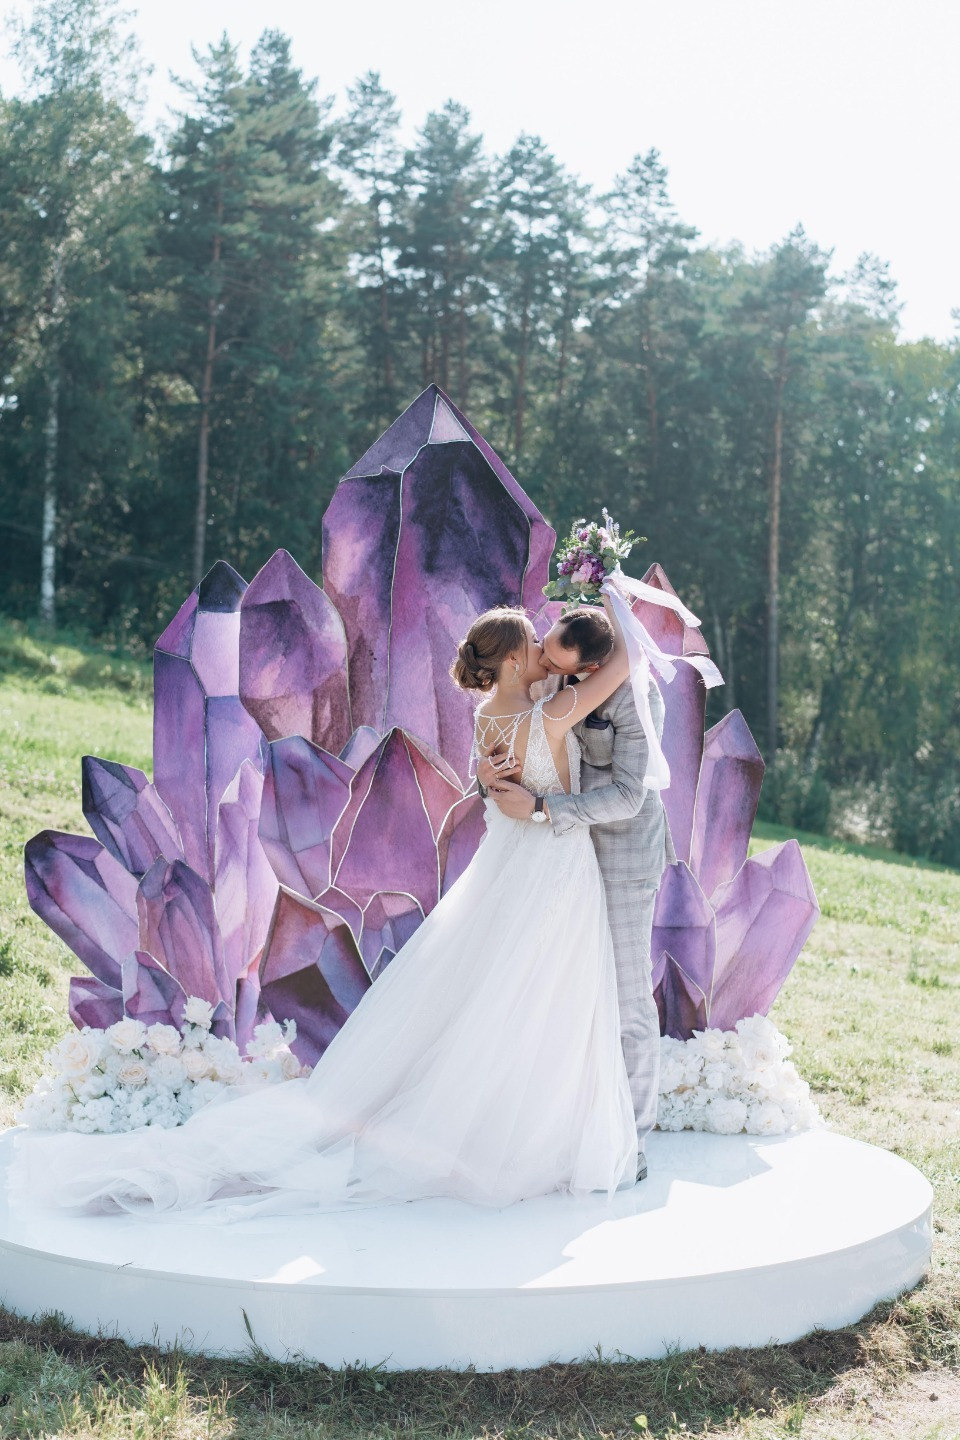 ФОТО ИЗ СТАТЬИ: Сила фиолетового угля: современная свадьба в стиле геометрия